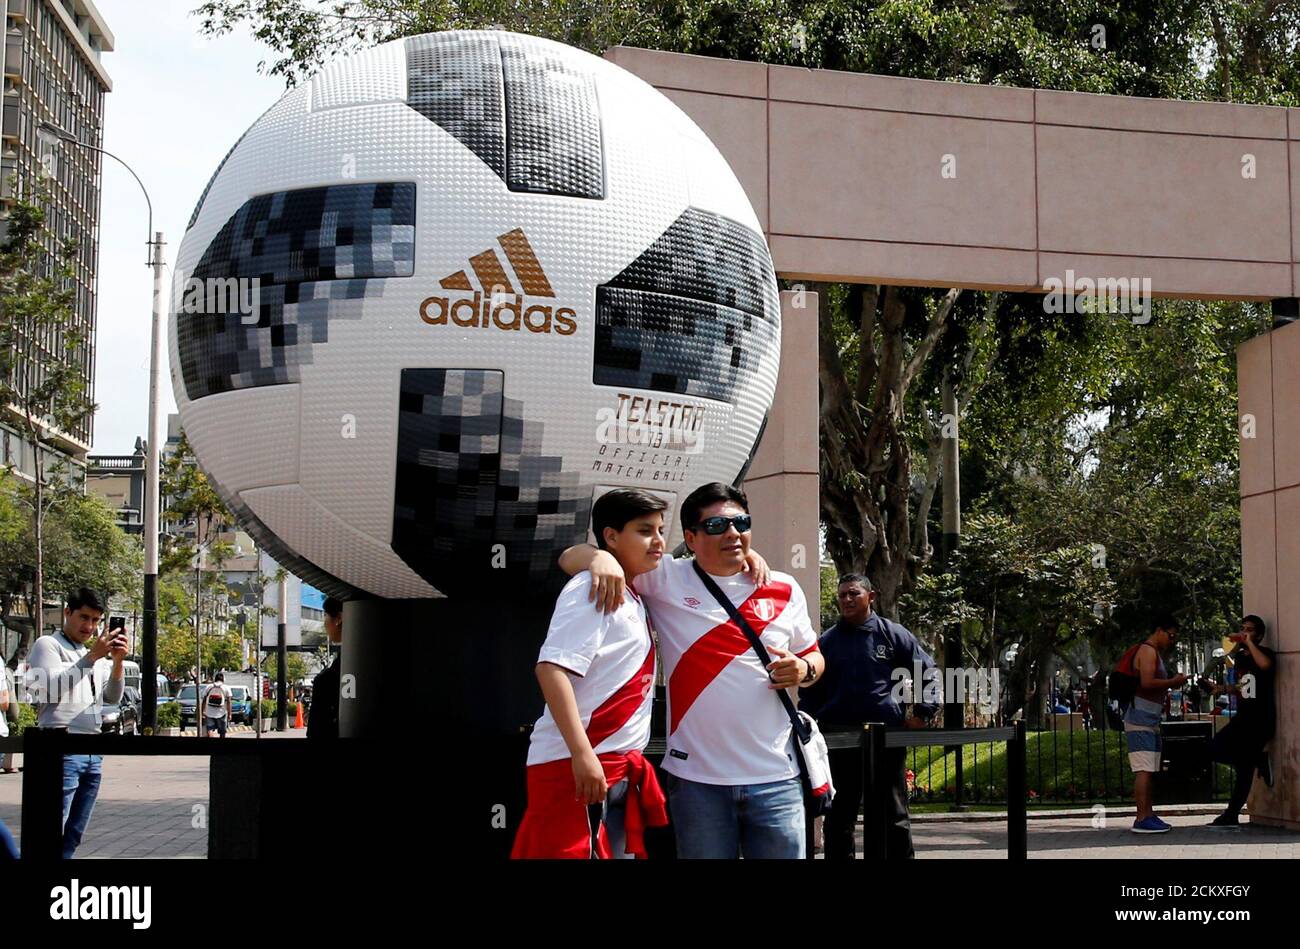 Fútbol - Perú contra Nueva Zelanda - Mundial 2018 Playoffs - Lima, Perú - 16 de noviembre de 2017 personas con camisetas de fútbol peruanas posan para una con una